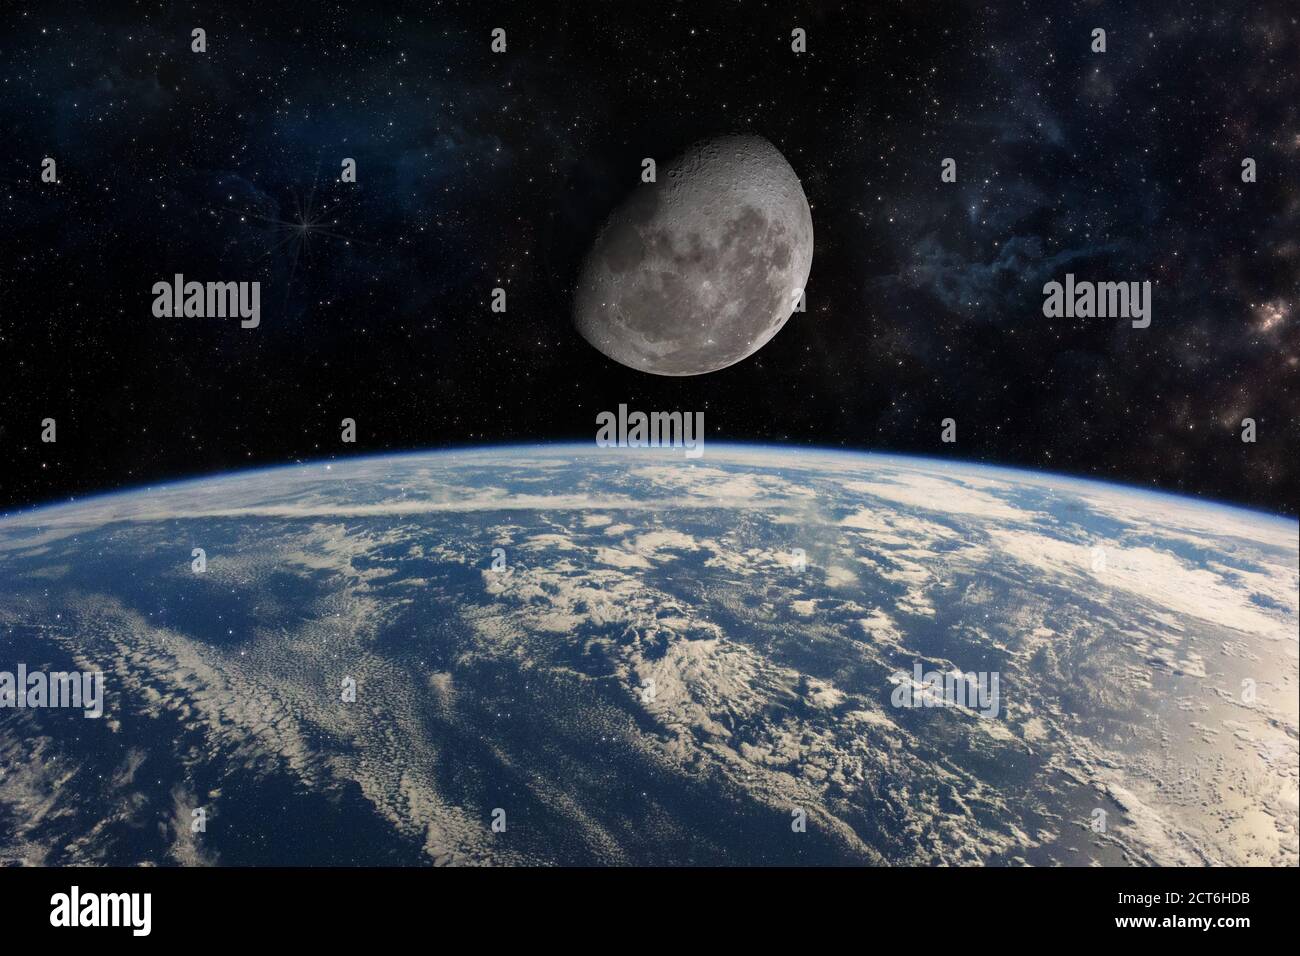 Hochwertige Deep Space iimage mit der Erde und dem Mond. Elemente dieses Bildes, die von der NASA eingerichtet wurden Stockfoto